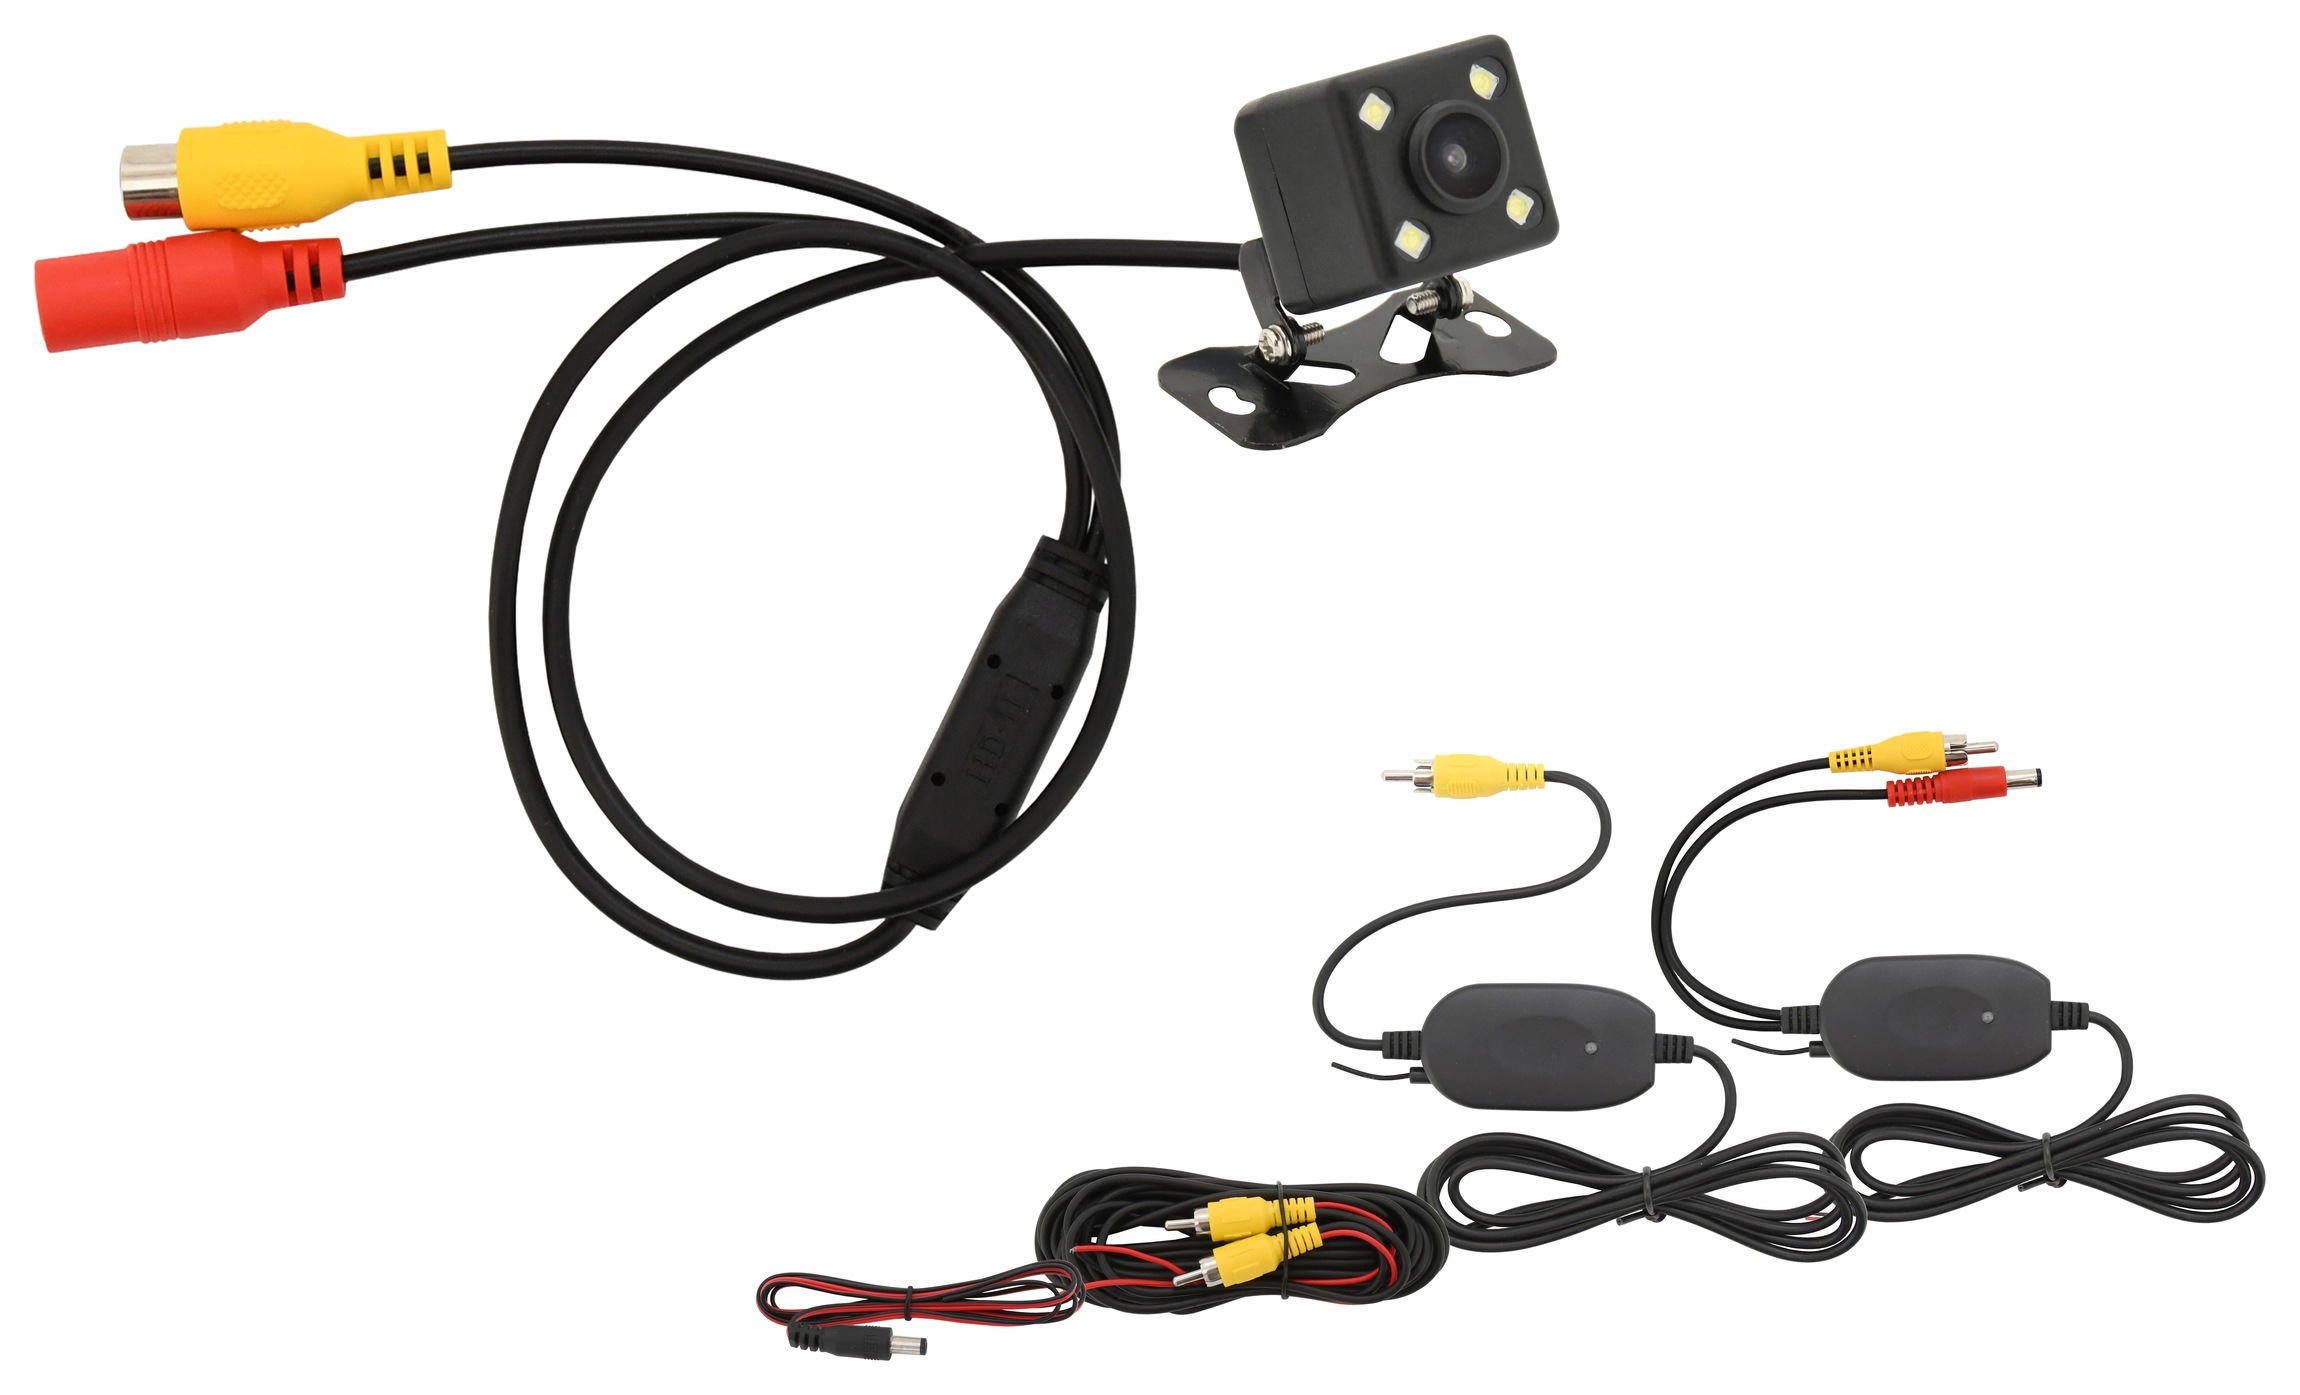 Parkovací kamera DICE bezdrátová polohovací s LED přísvitem Compass 33594 + Dárek, servis bez starostí v hodnotě 300Kč